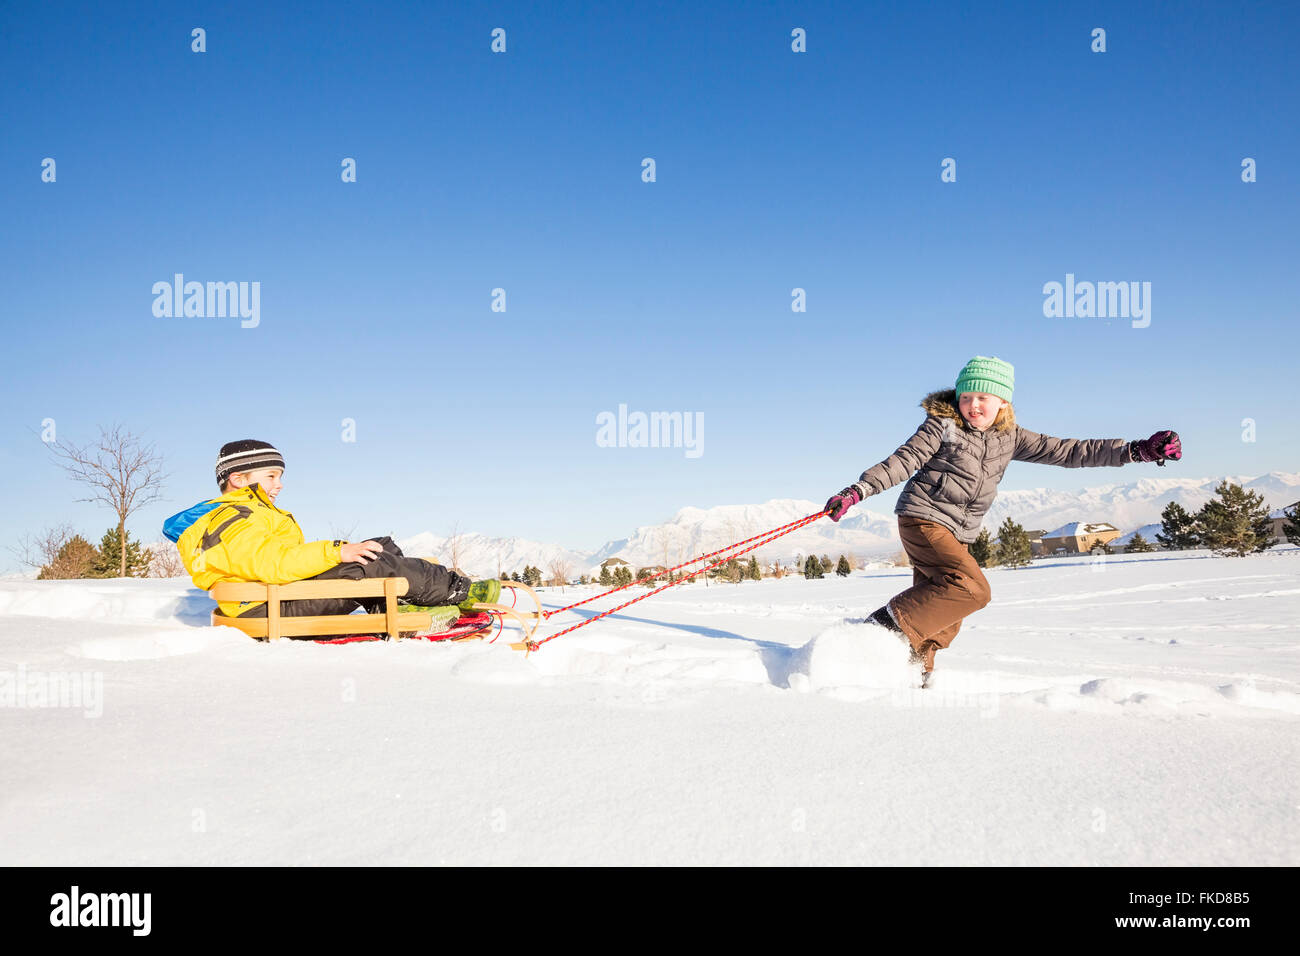 Kinder (8-9) mit Schlitten im Schnee spielen Stockfoto